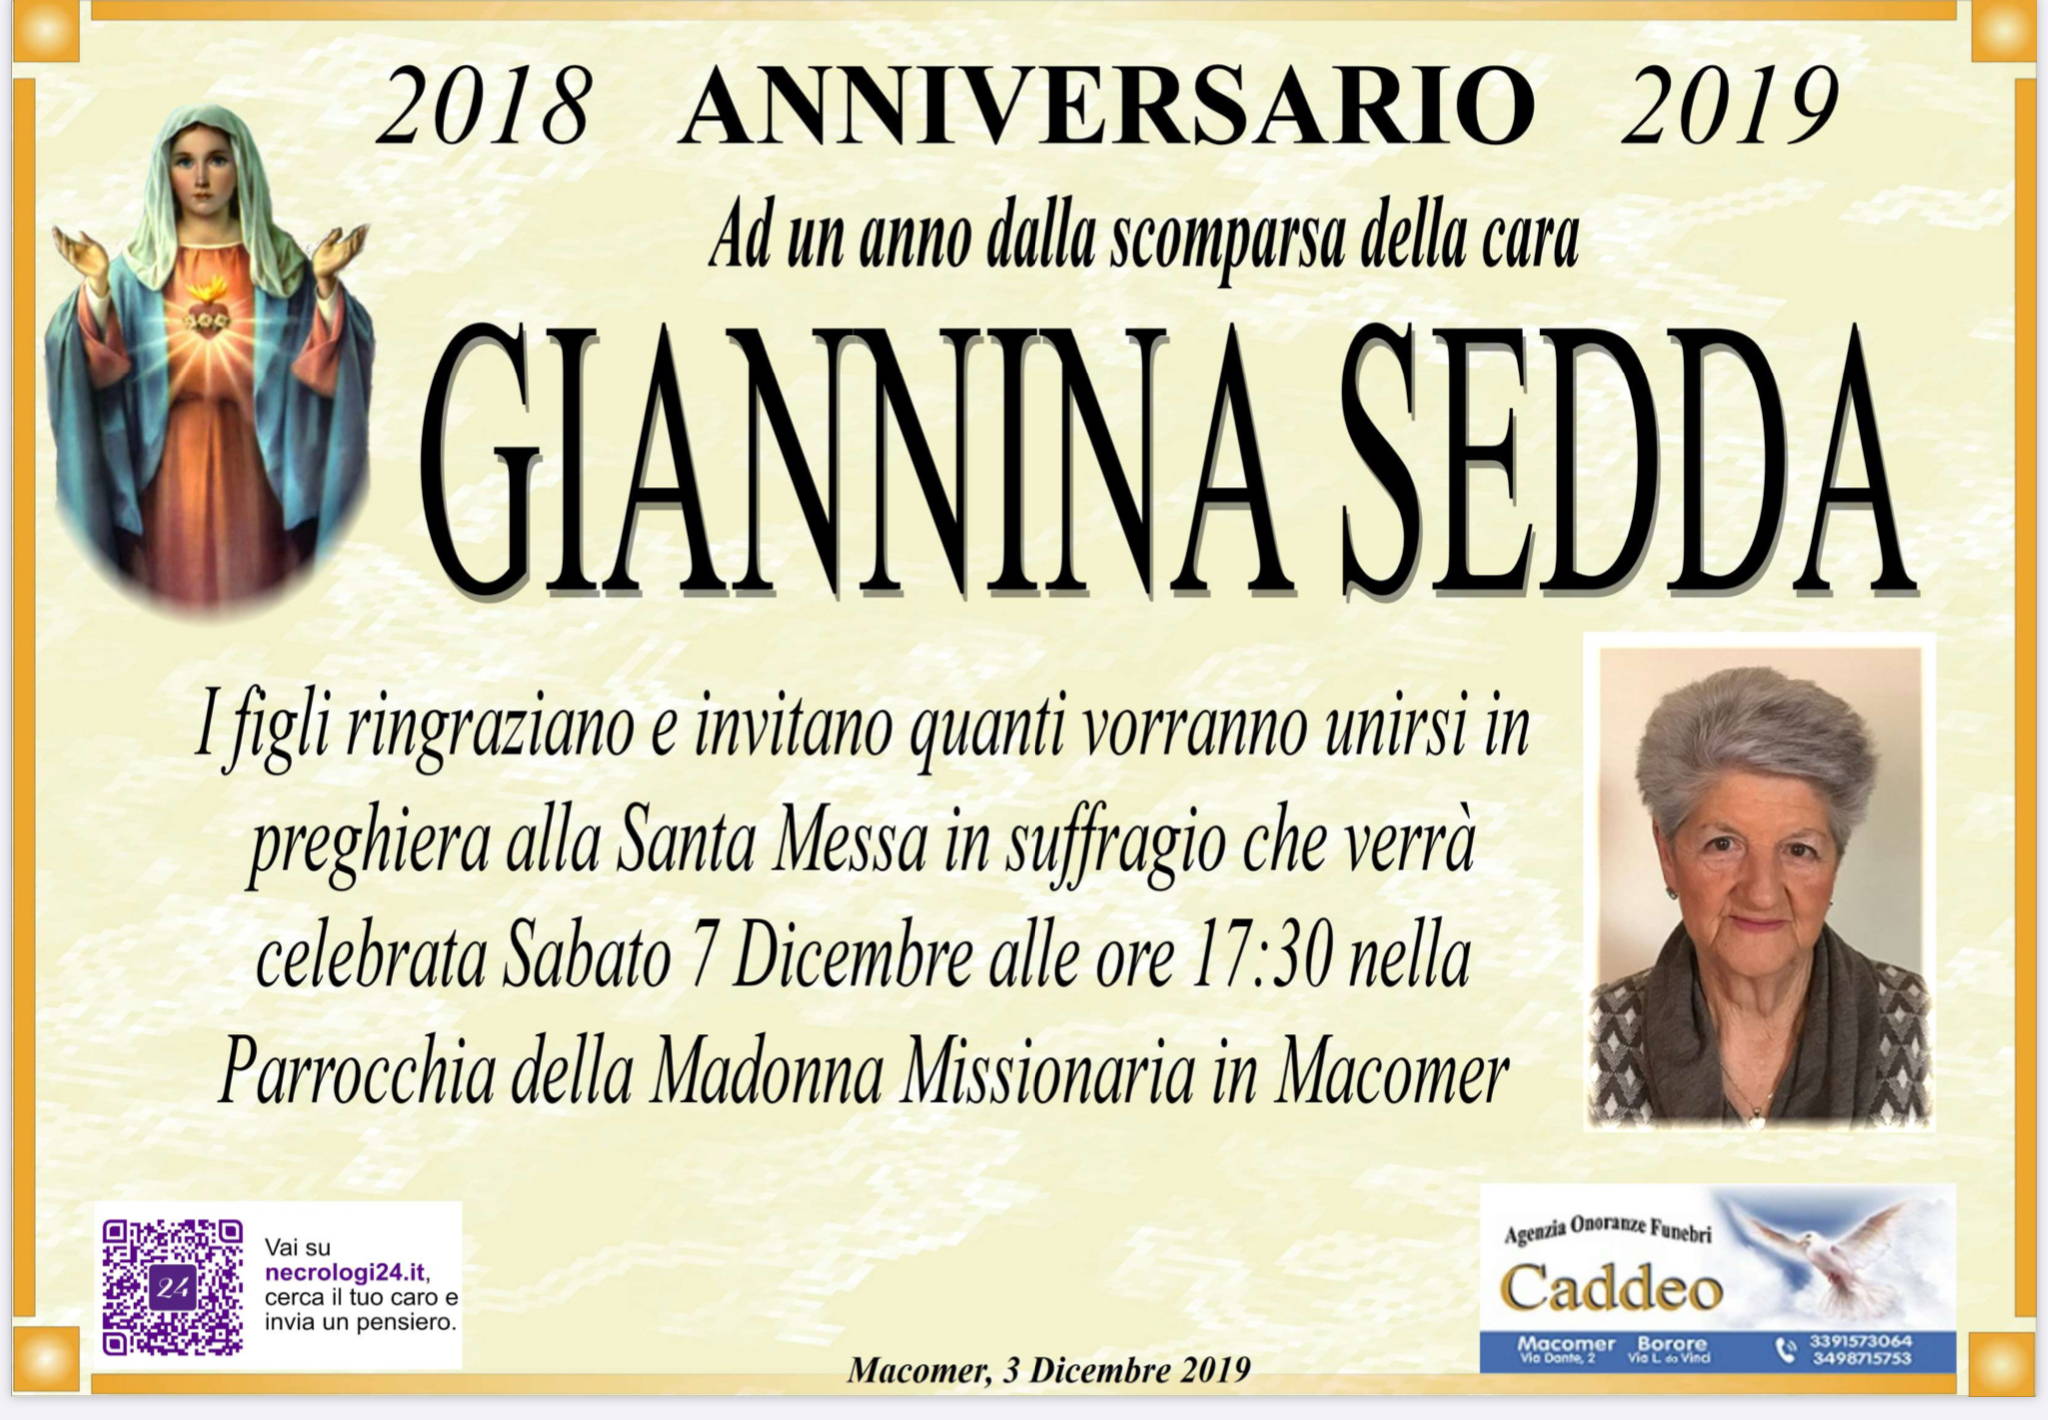 Giannina Sedda